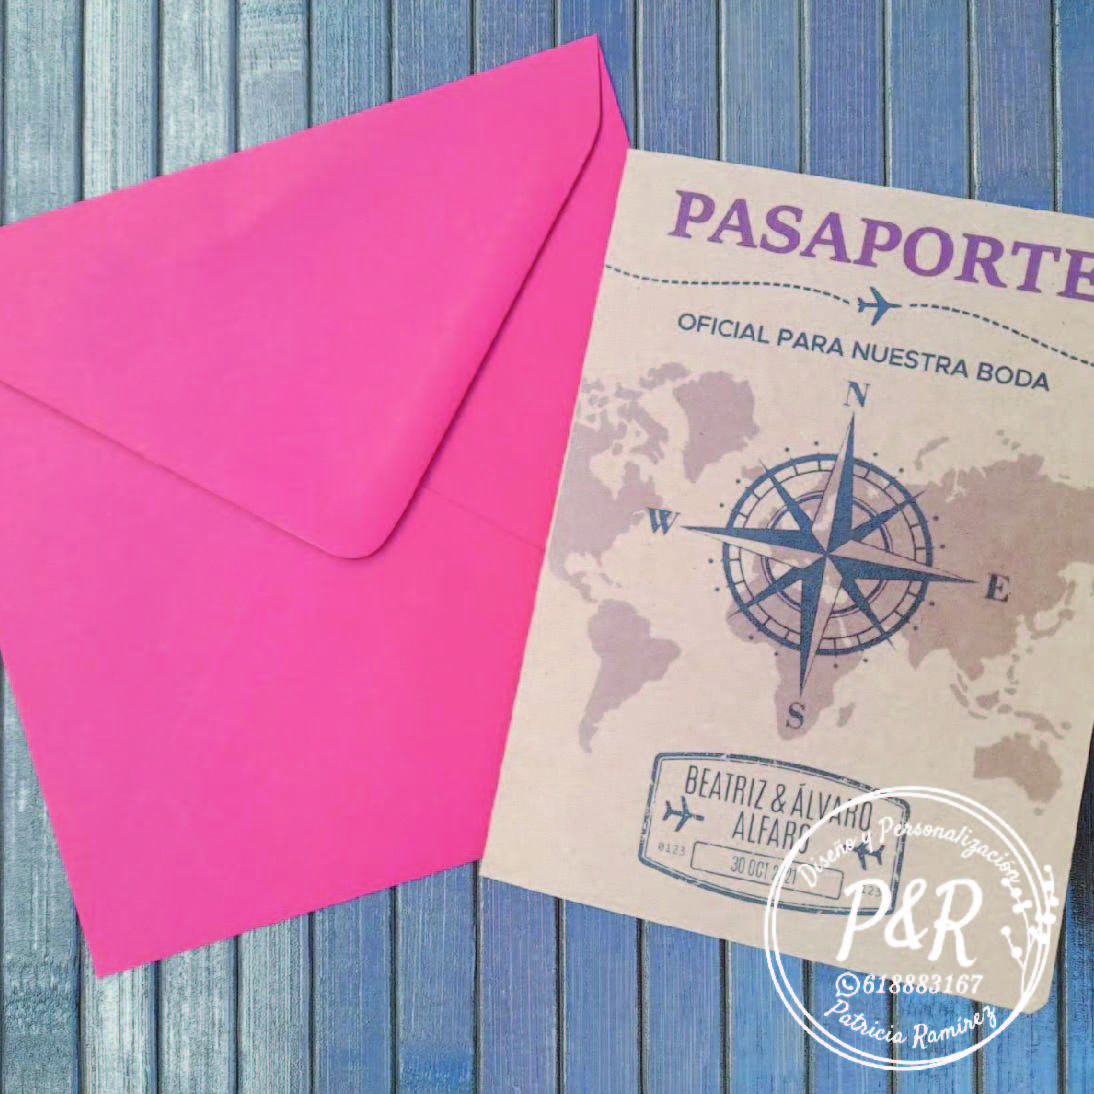 eventosyregalospersonalizados invitación boda pasaporte sobre rojo 01